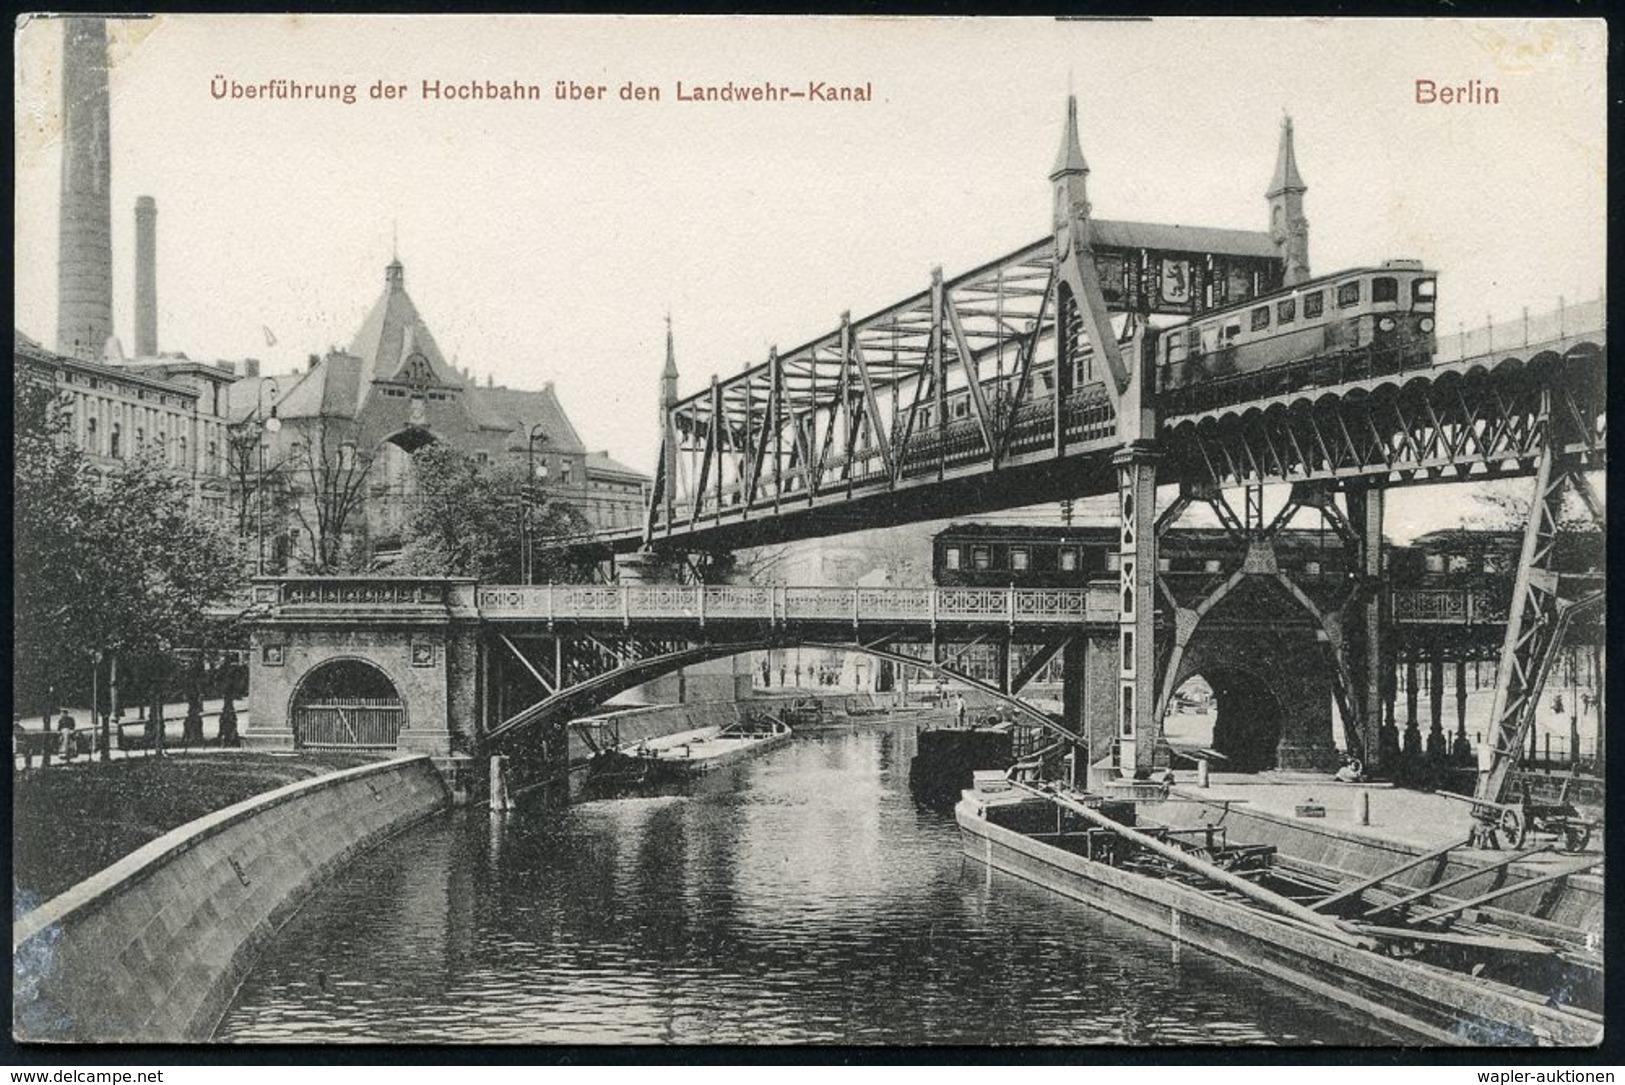 UNTERGRUNDBAHN /U-BAHN : Berlin-Kreuzberg 1907/25 U-Bahn Landwehrkanal/Anhalter Bhf., 13 Verschiedene S/w.-Foto-Ak. , Me - Trains